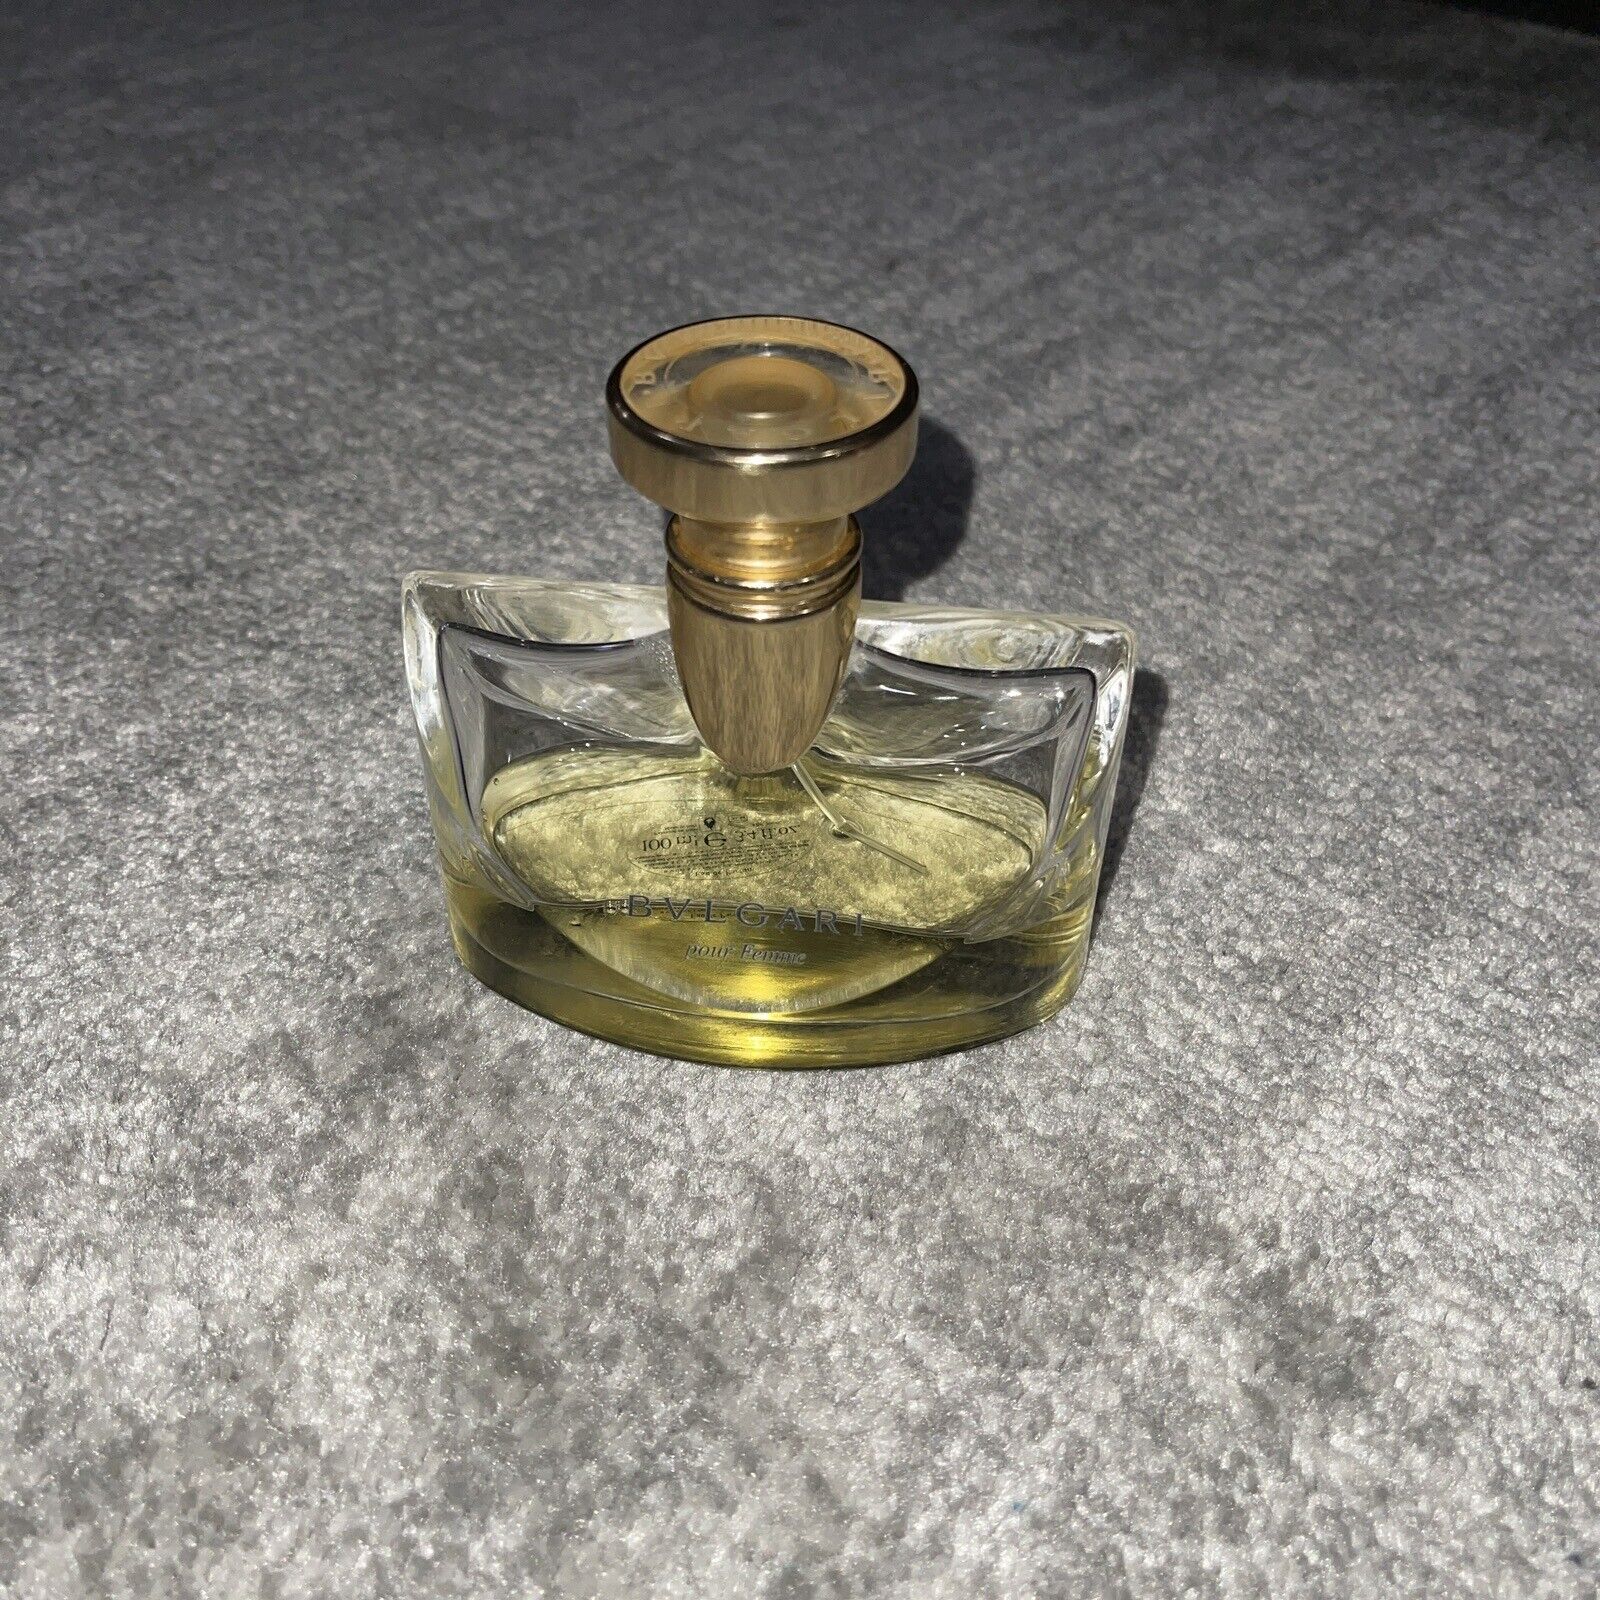 Vintage Bvlgari Pour Femme Eau de Parfum 3.4 oz Perfume Discontinued Rare